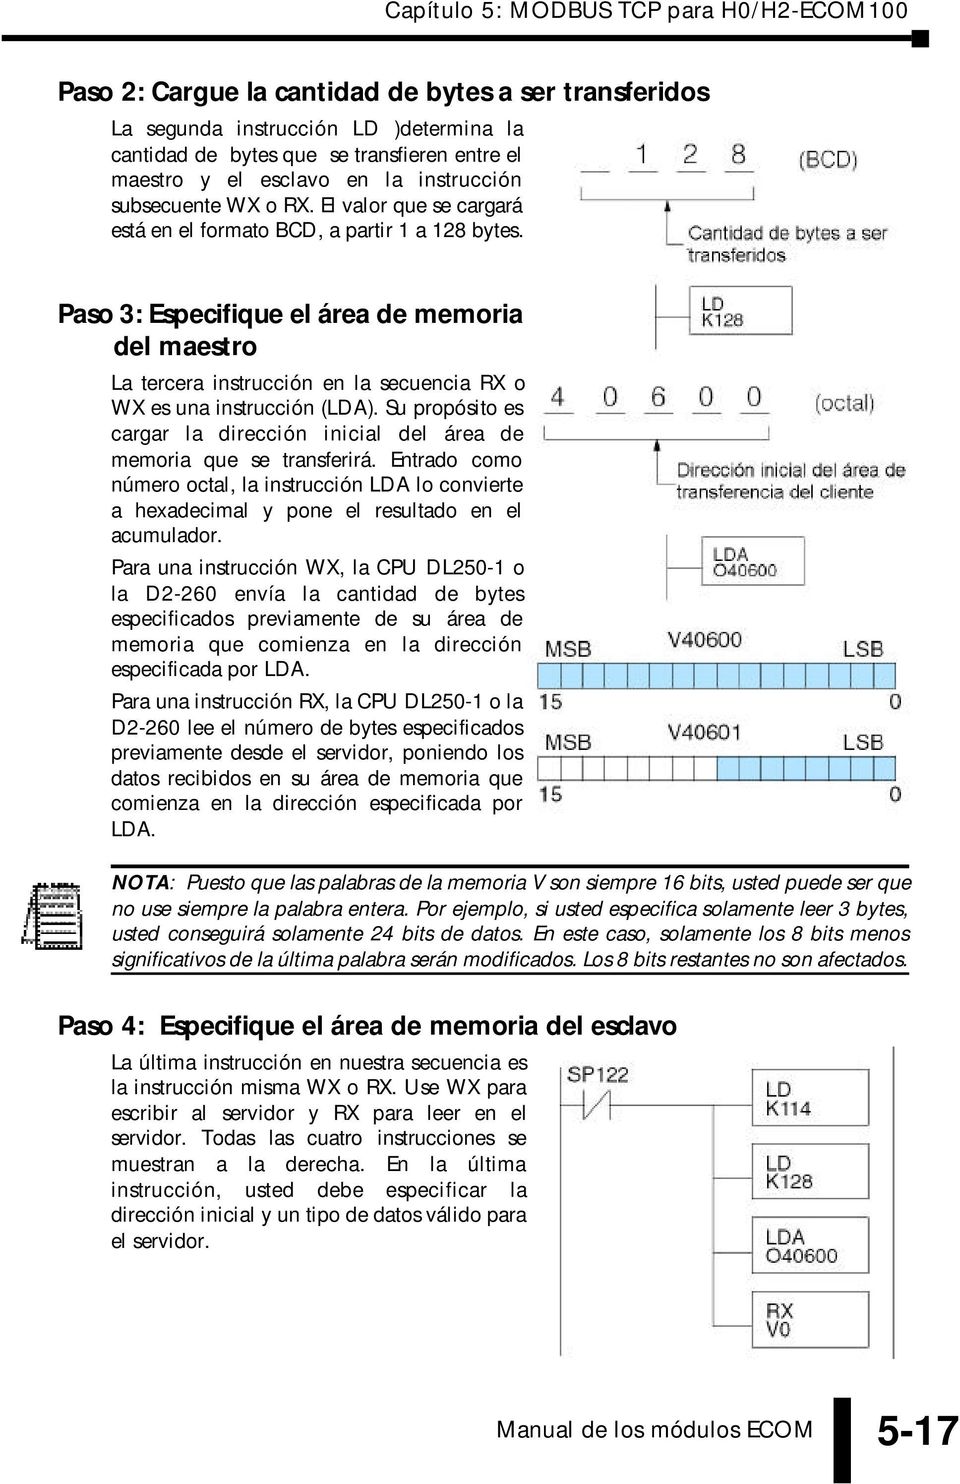 Su propósito es cargar la dirección inicial del área de memoria que se transferirá. Entrado como número octal, la instrucción LDA lo convierte a hexadecimal y pone el resultado en el acumulador.